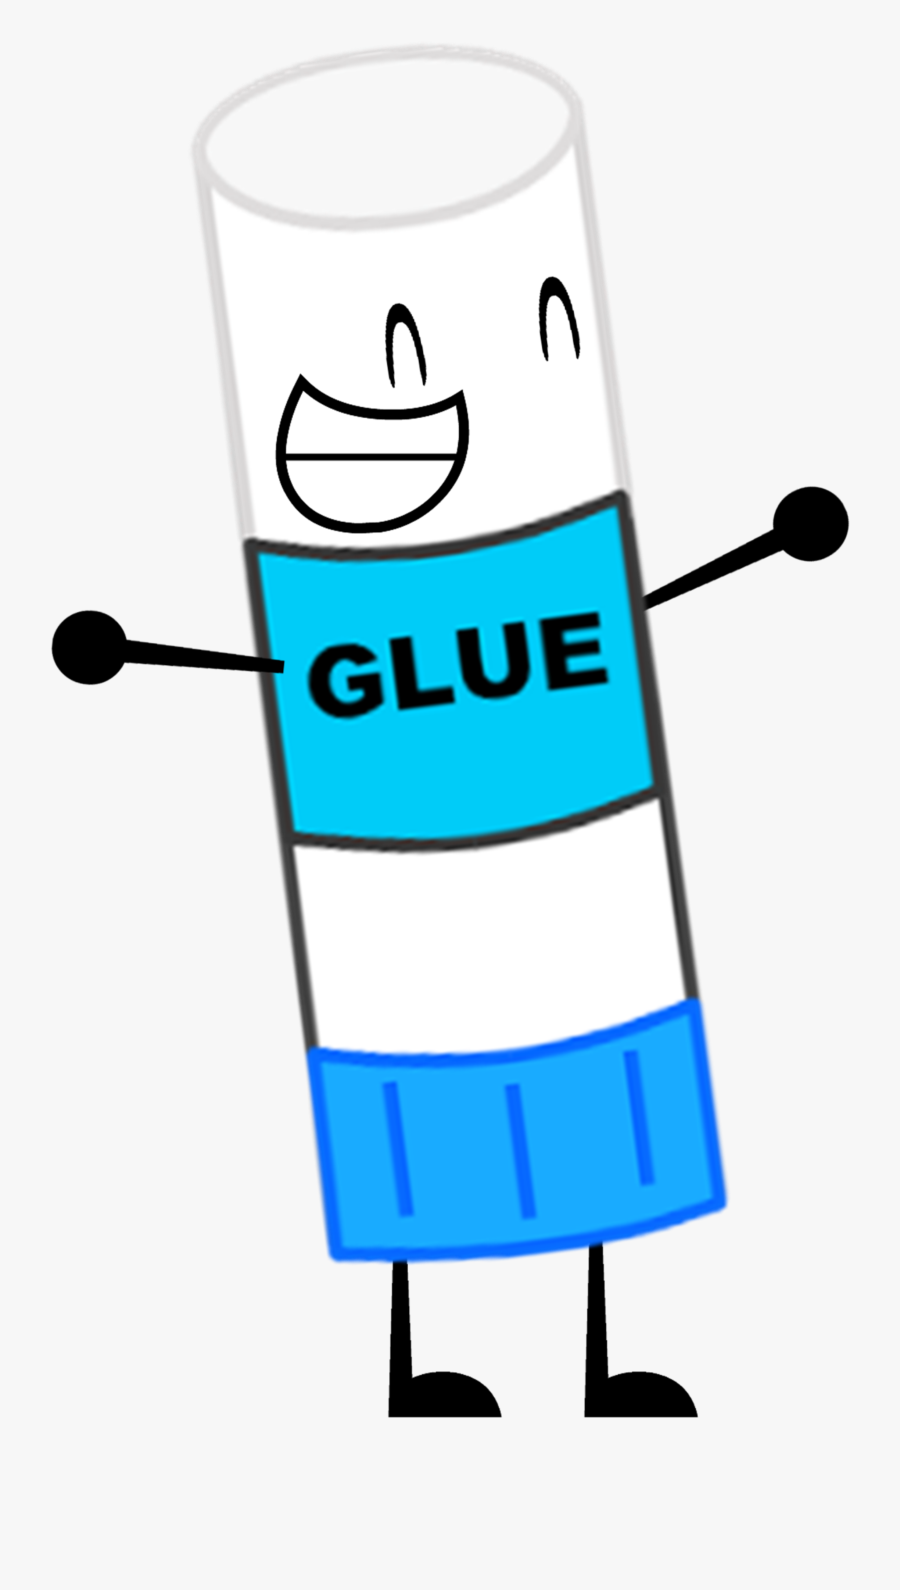 Glue Clipart Glue Stick - Transparent Background Clipart Of Glue is a fre.....